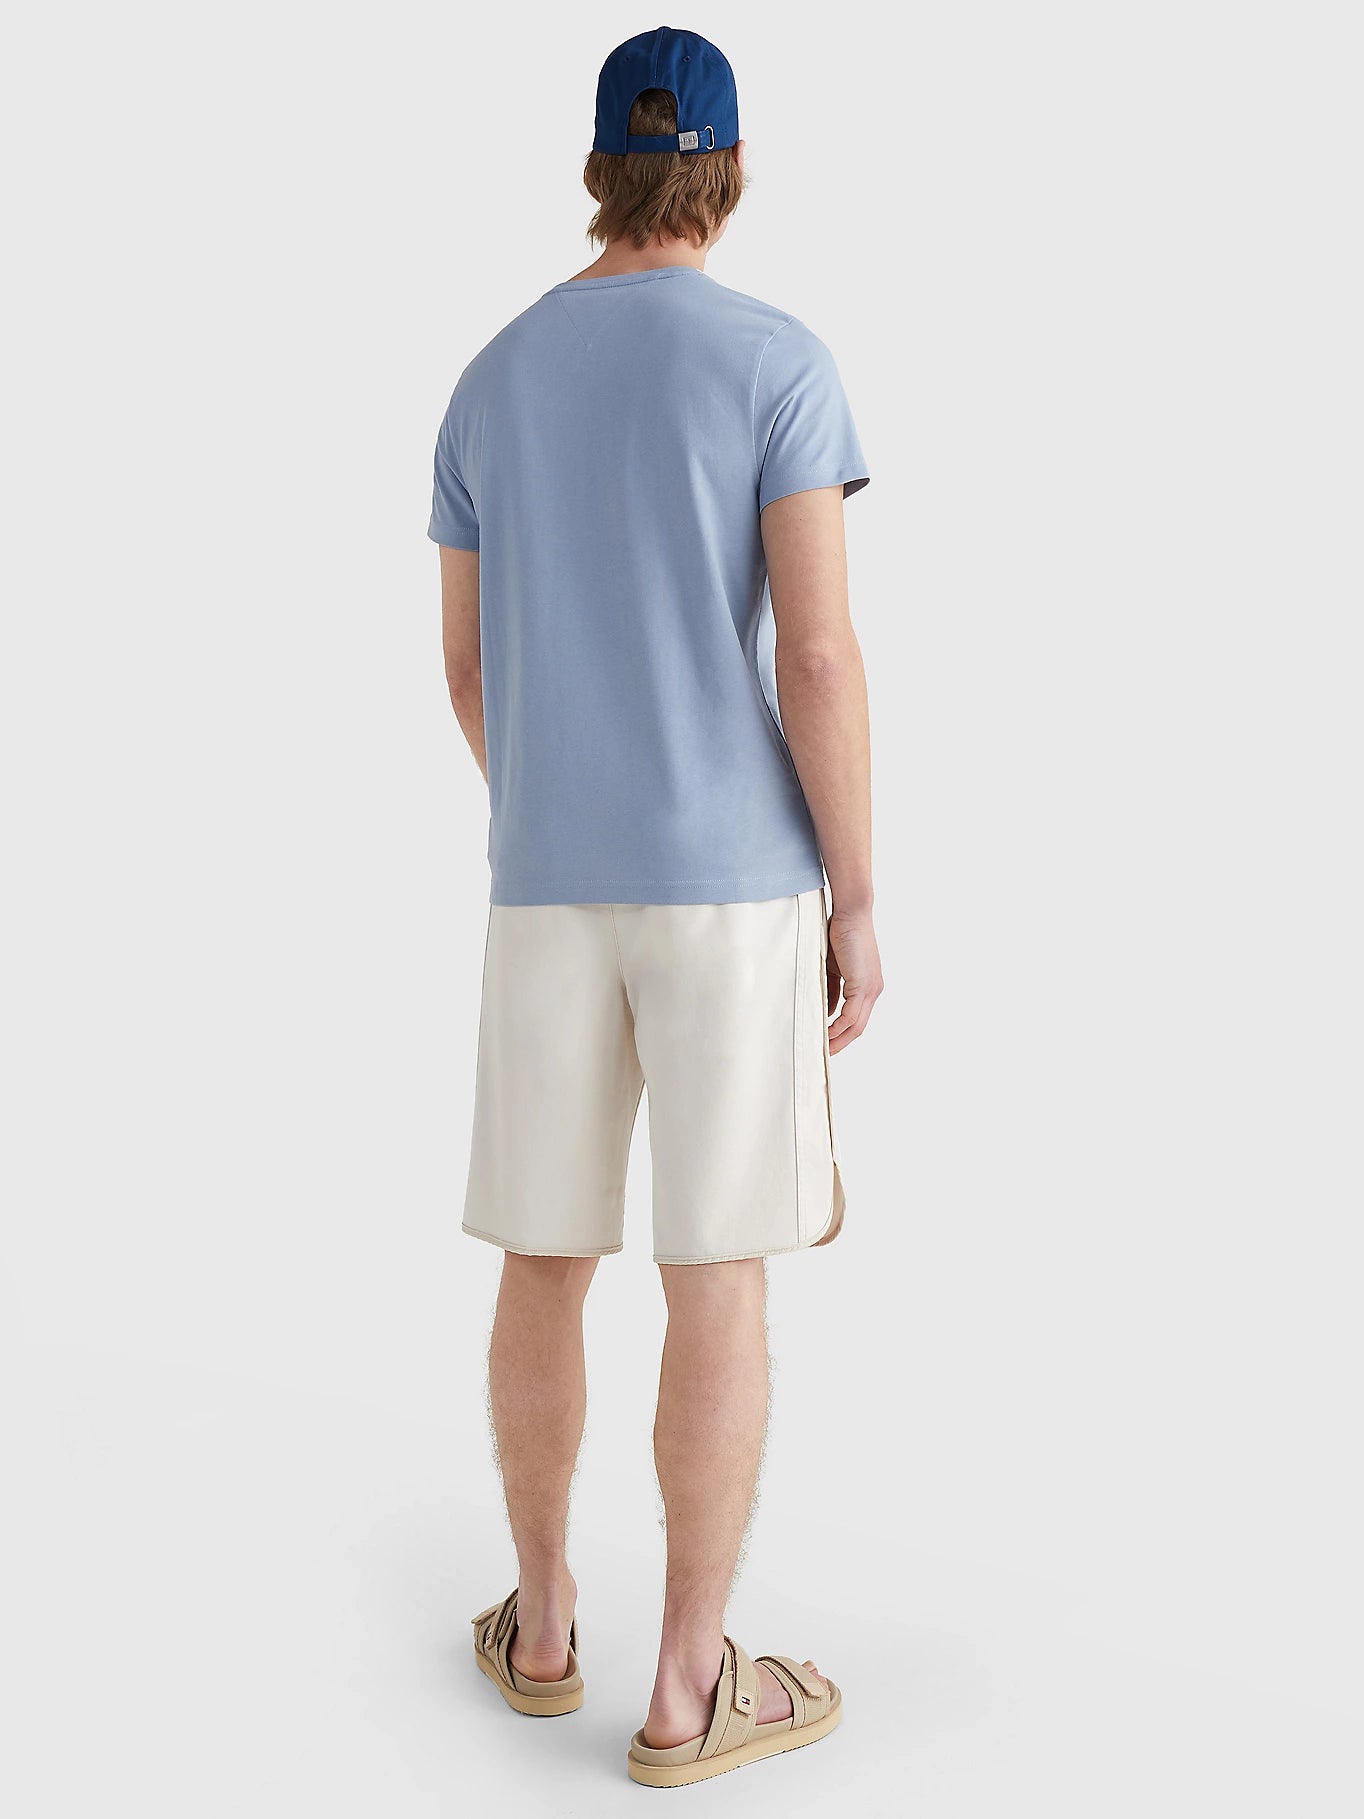 T-Shirt Tommy Hilfiger bleu clair pour homme | Georgespaul